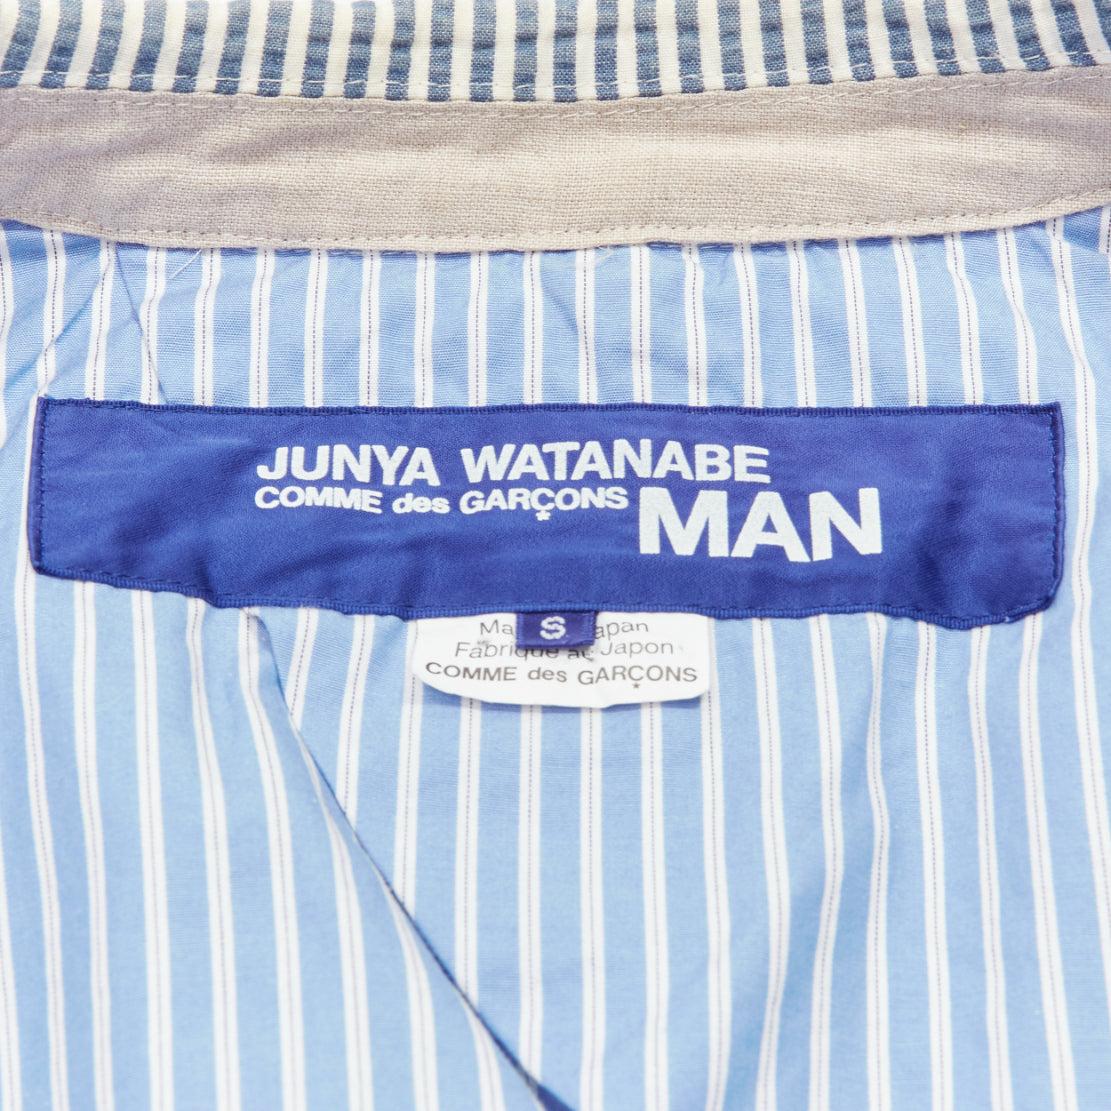 JUNYA WATANABE MAN 2013 white striped seersucker cotton casual blazer jacket S For Sale 4